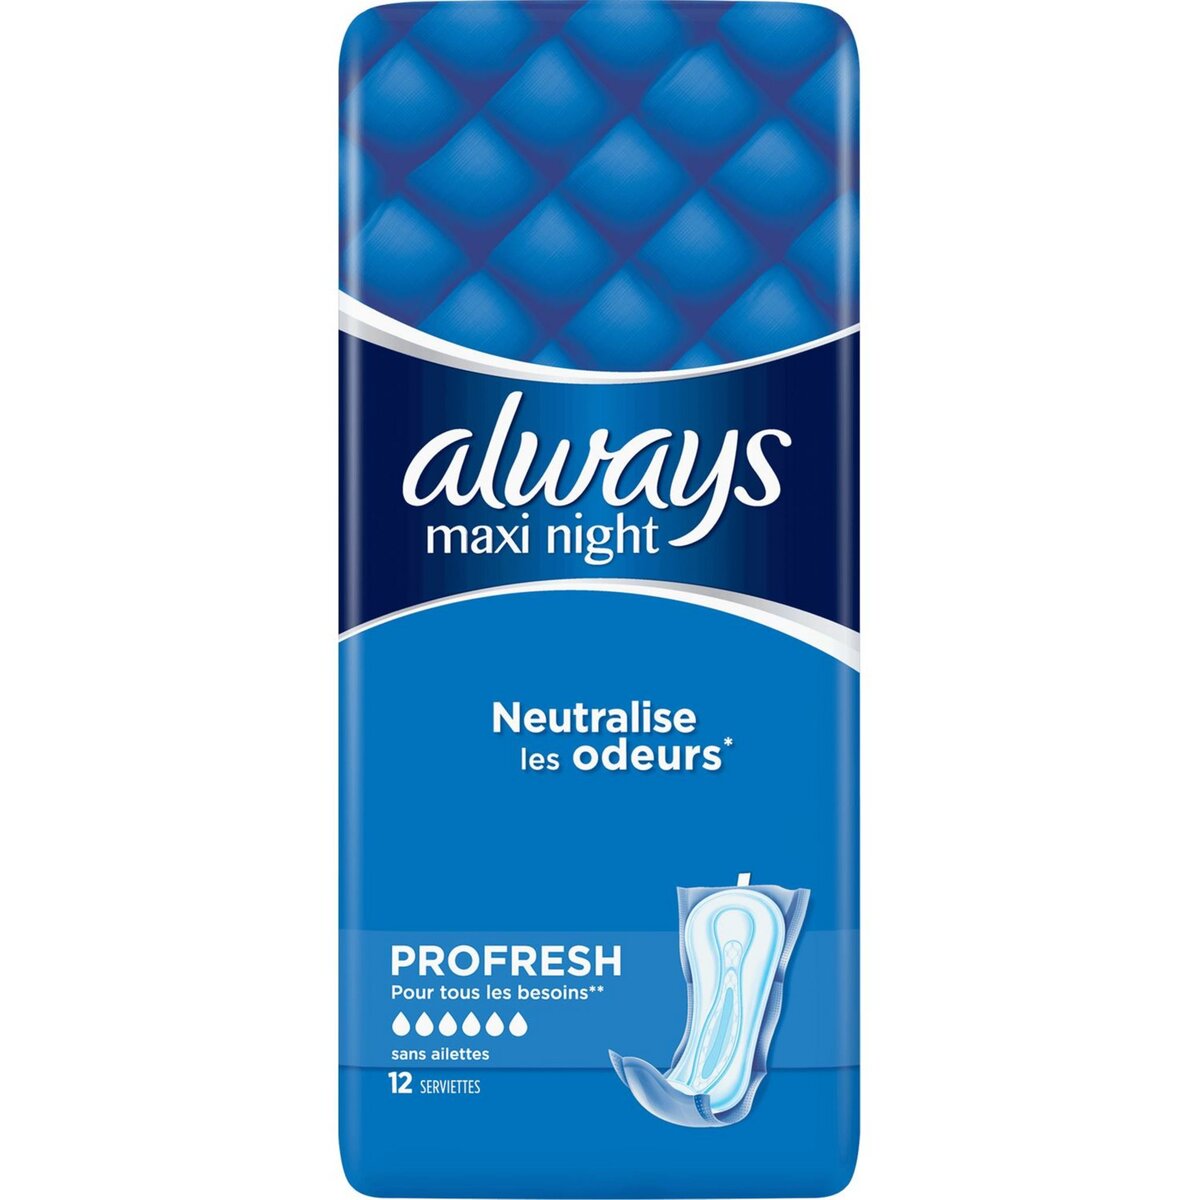 ALWAYS Maxi Night serviettes hygiéniques nuit sans ailettes 12 serviettes